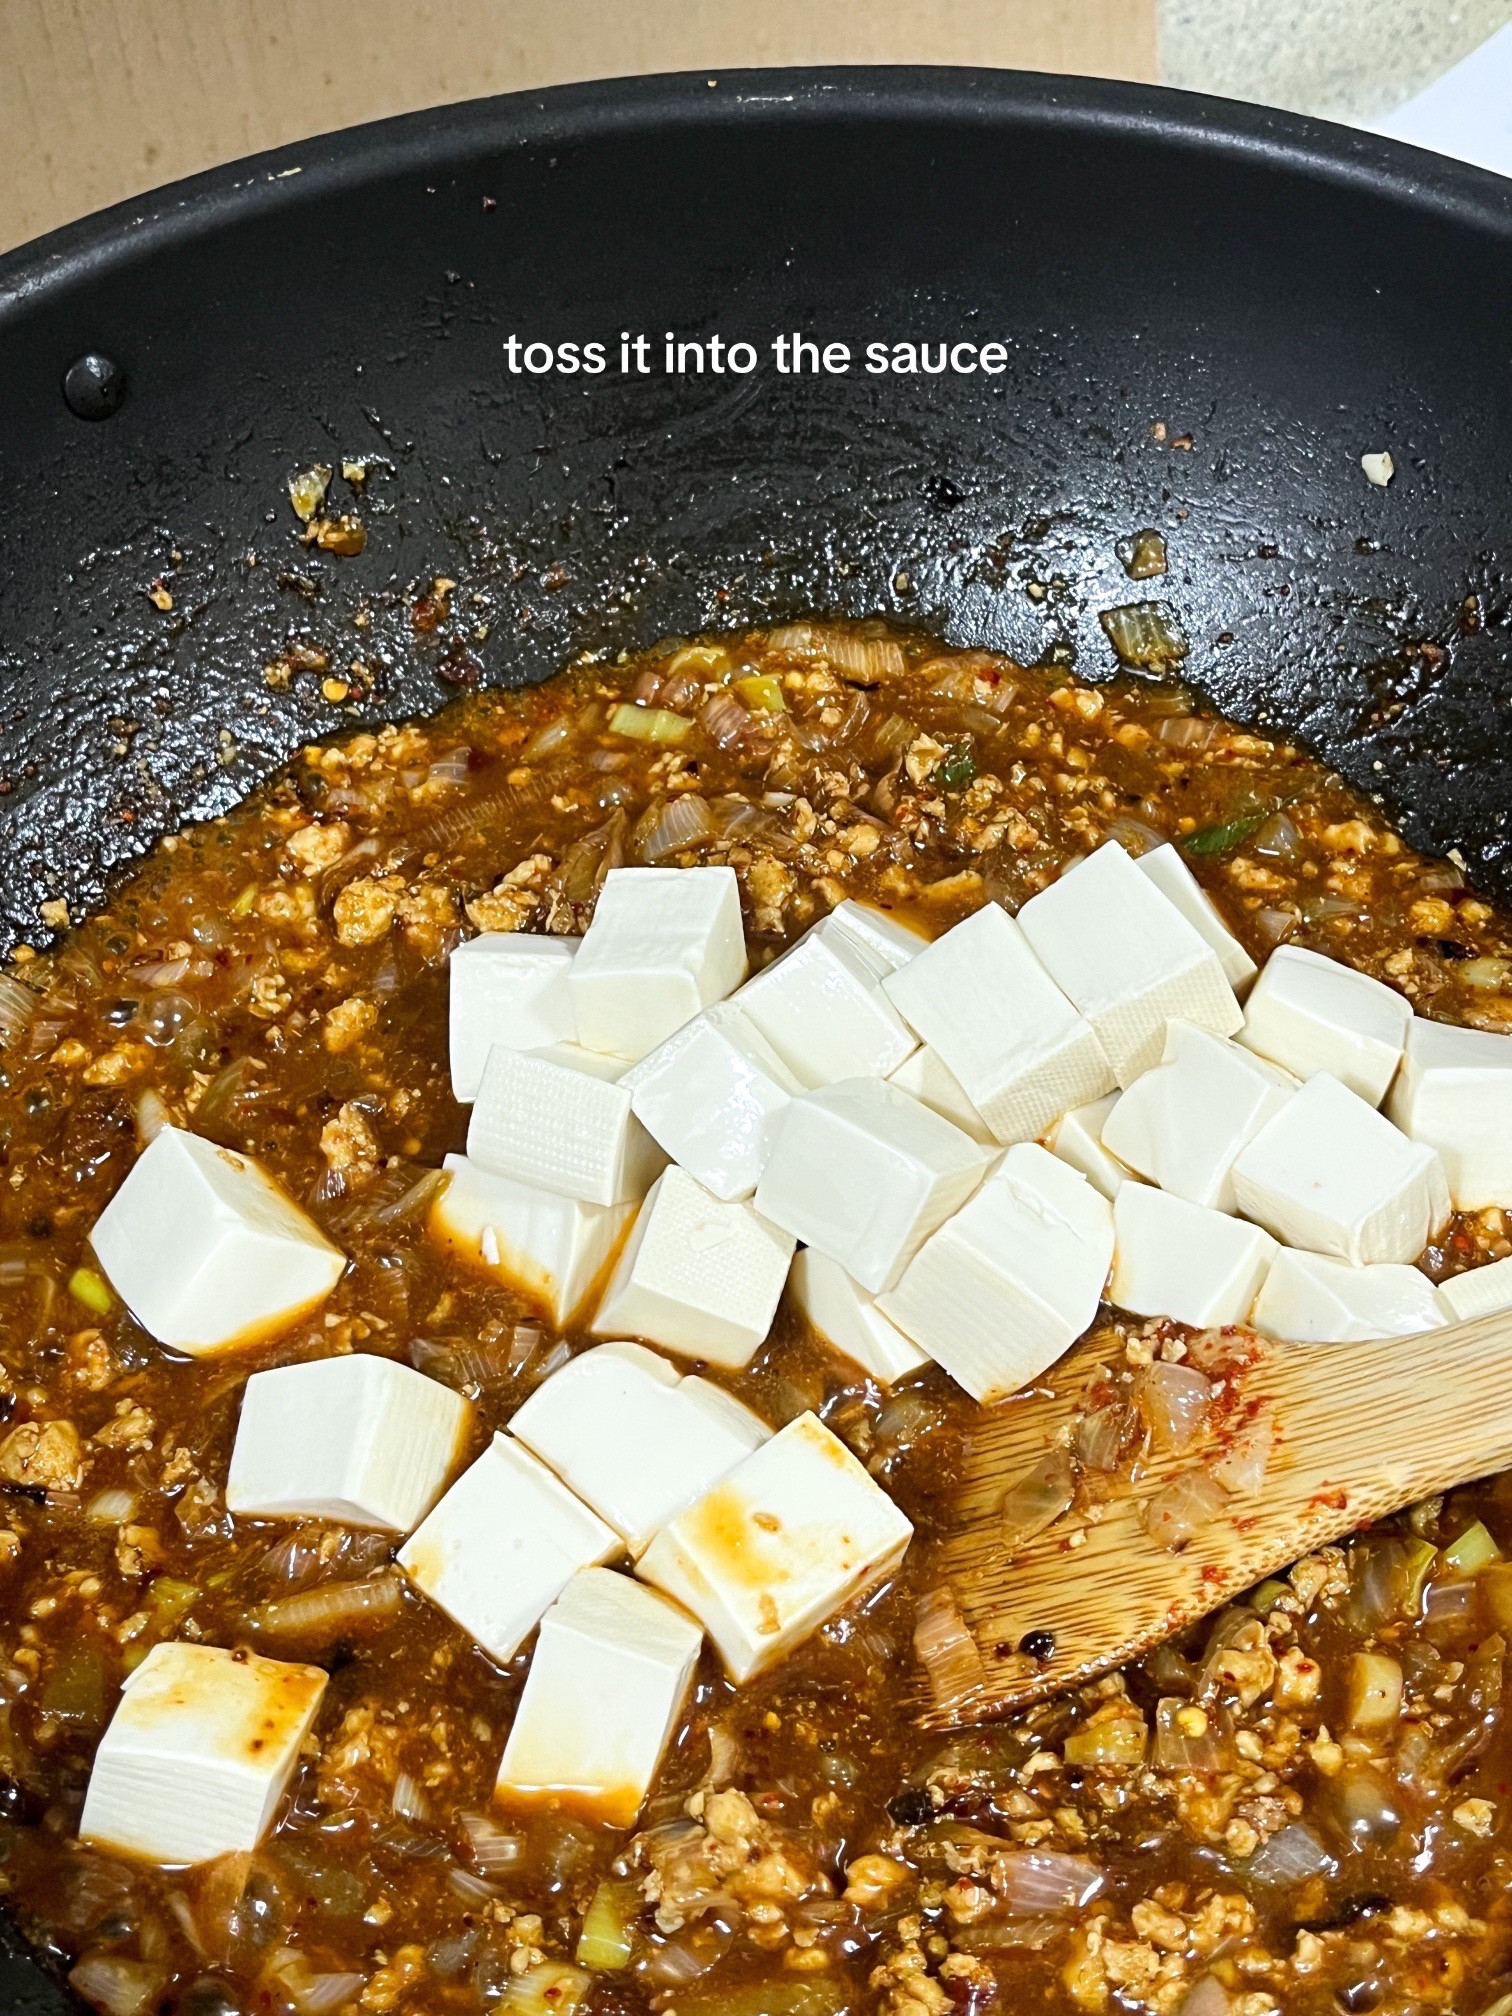 make mapo tofu